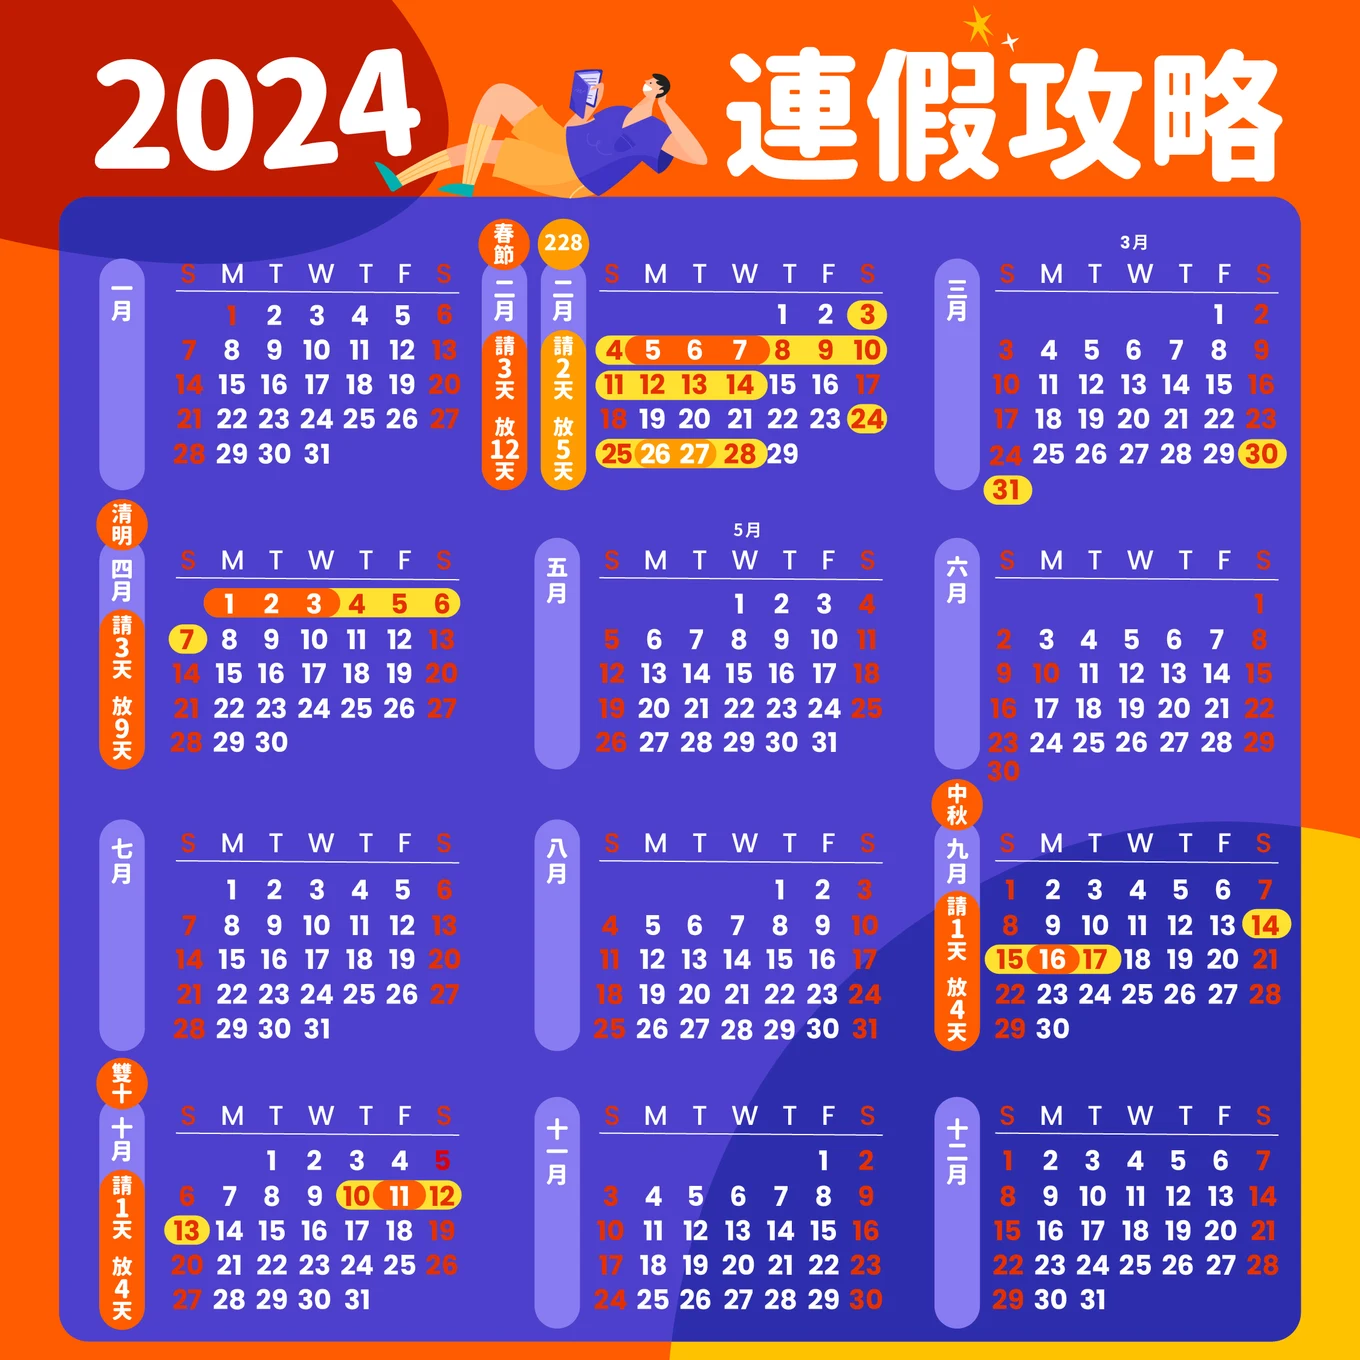 2024行事曆出爐